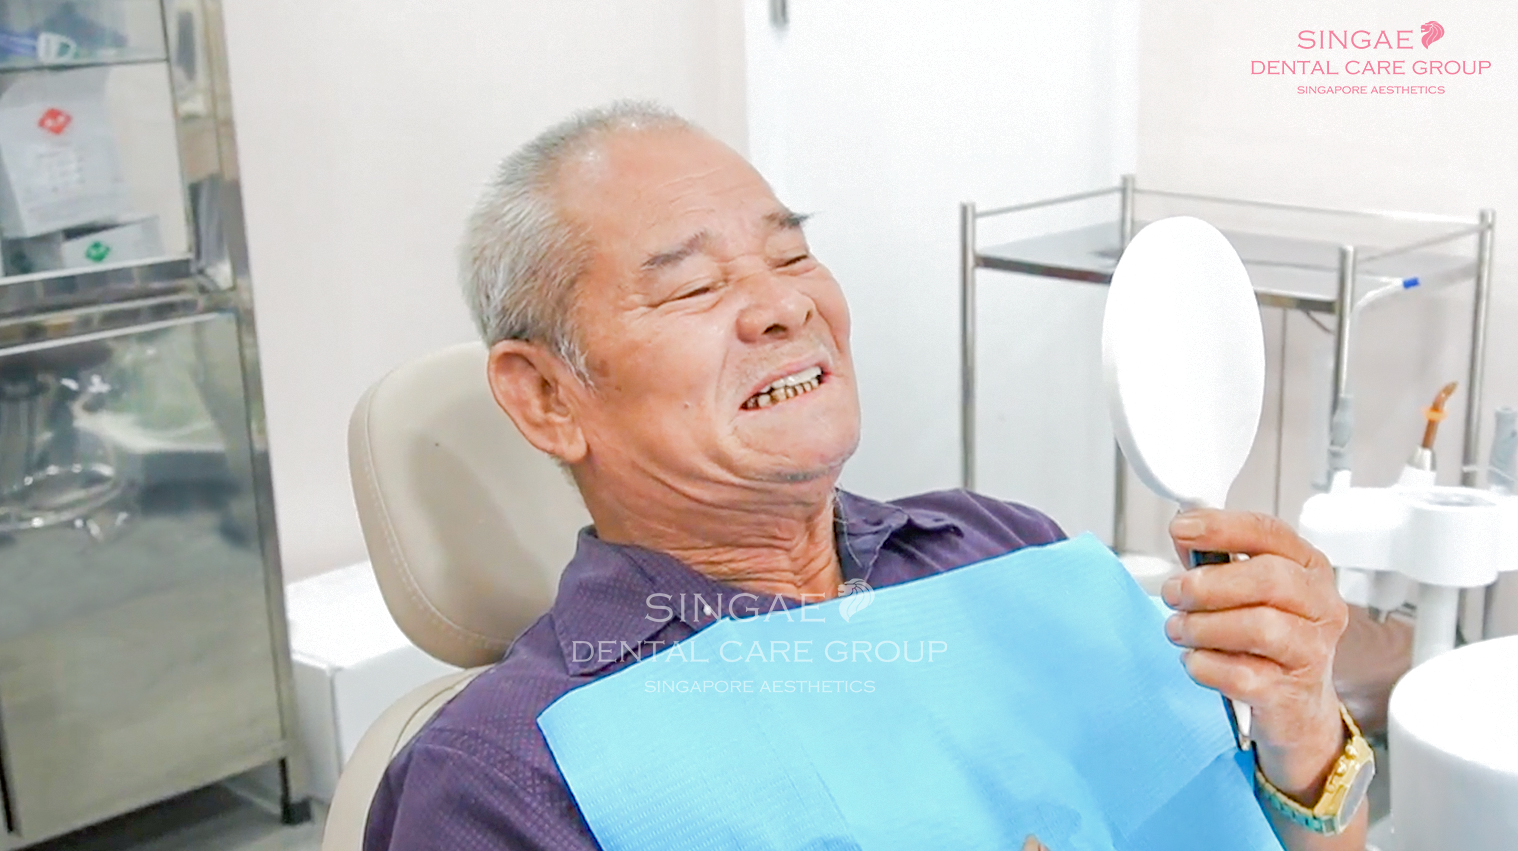 Chú Nguyễn Quang Tược( U80, sống tại TP.HCM) đến nha khoa Singae thăm khám vì hàm răng tháo lắp vướng víu, làm đi làm lại nhiều lần những vẫn không hiệu quả.